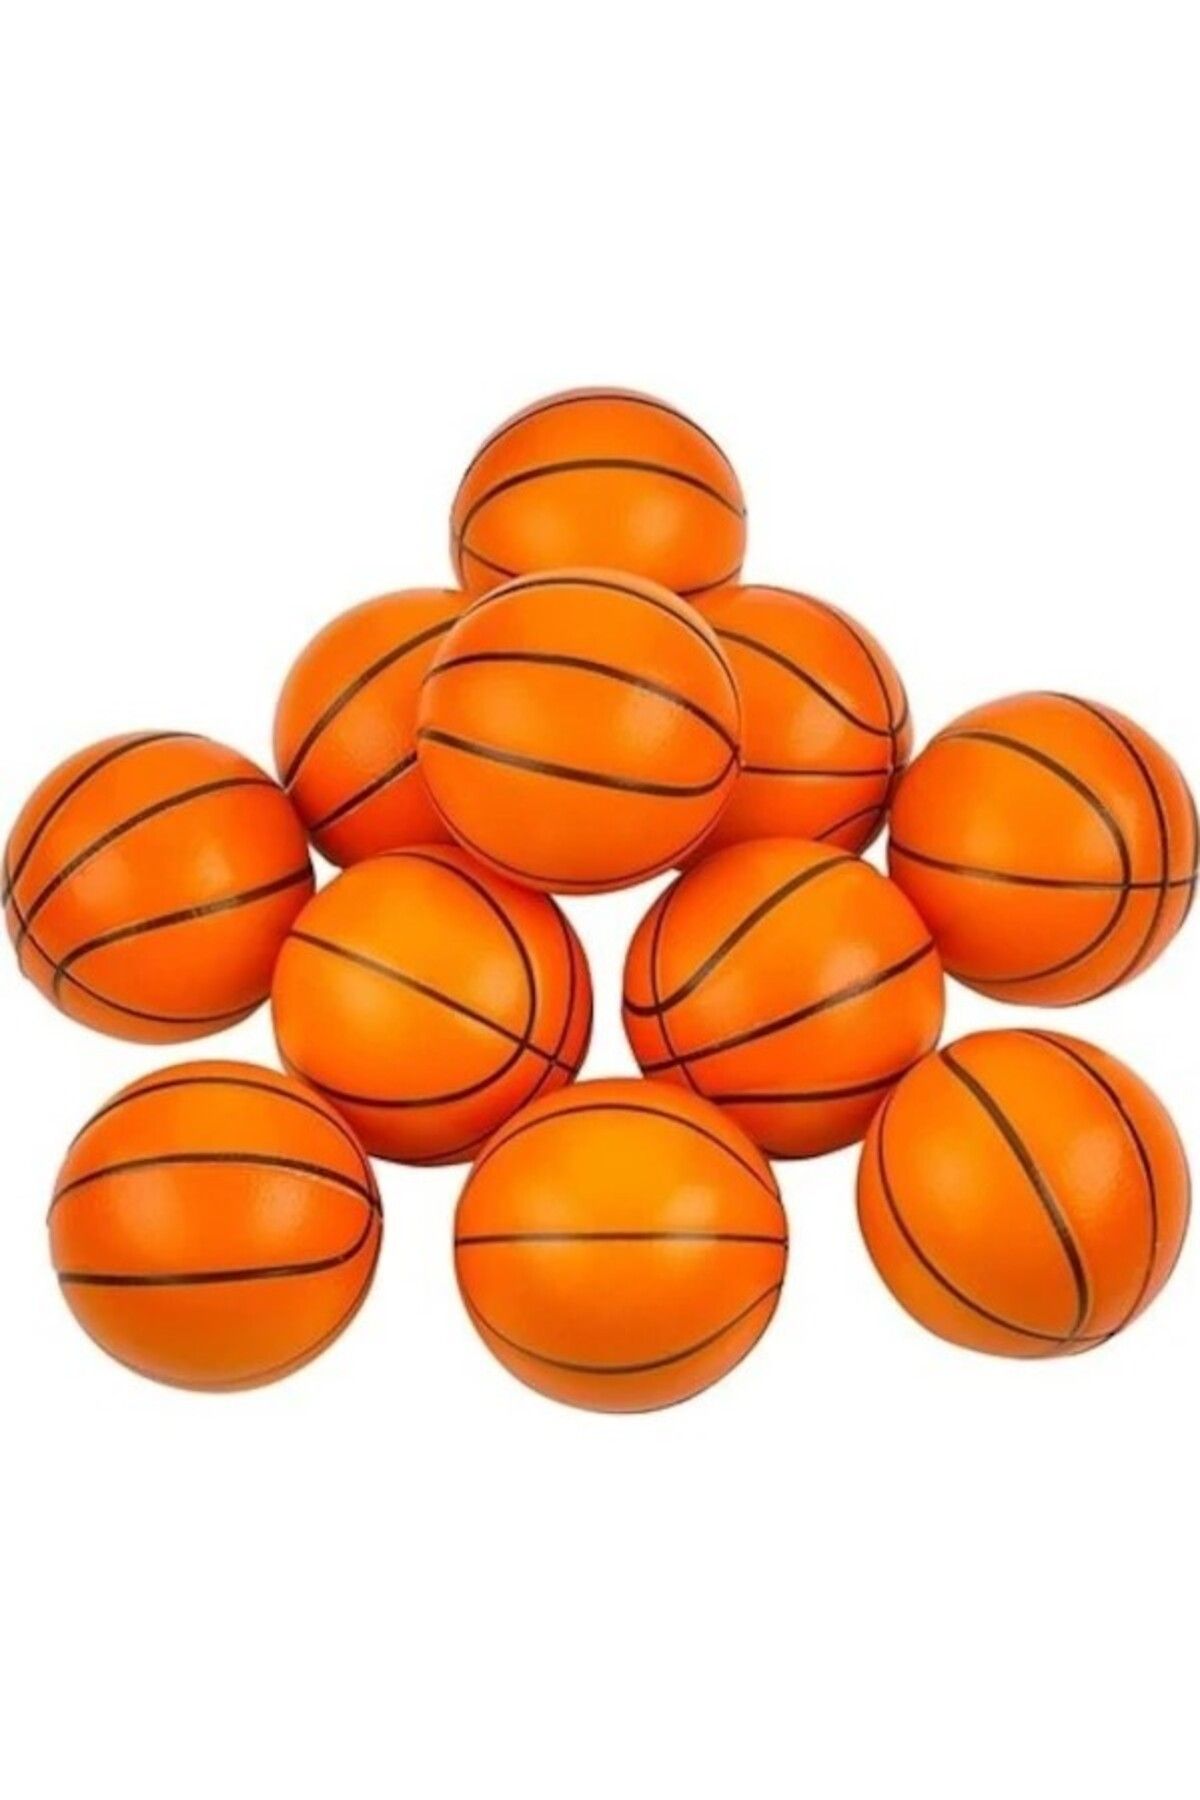 Limmy Basketbol Desenli Stres Topu Eğitici Oyuncak Çap 6 Cm